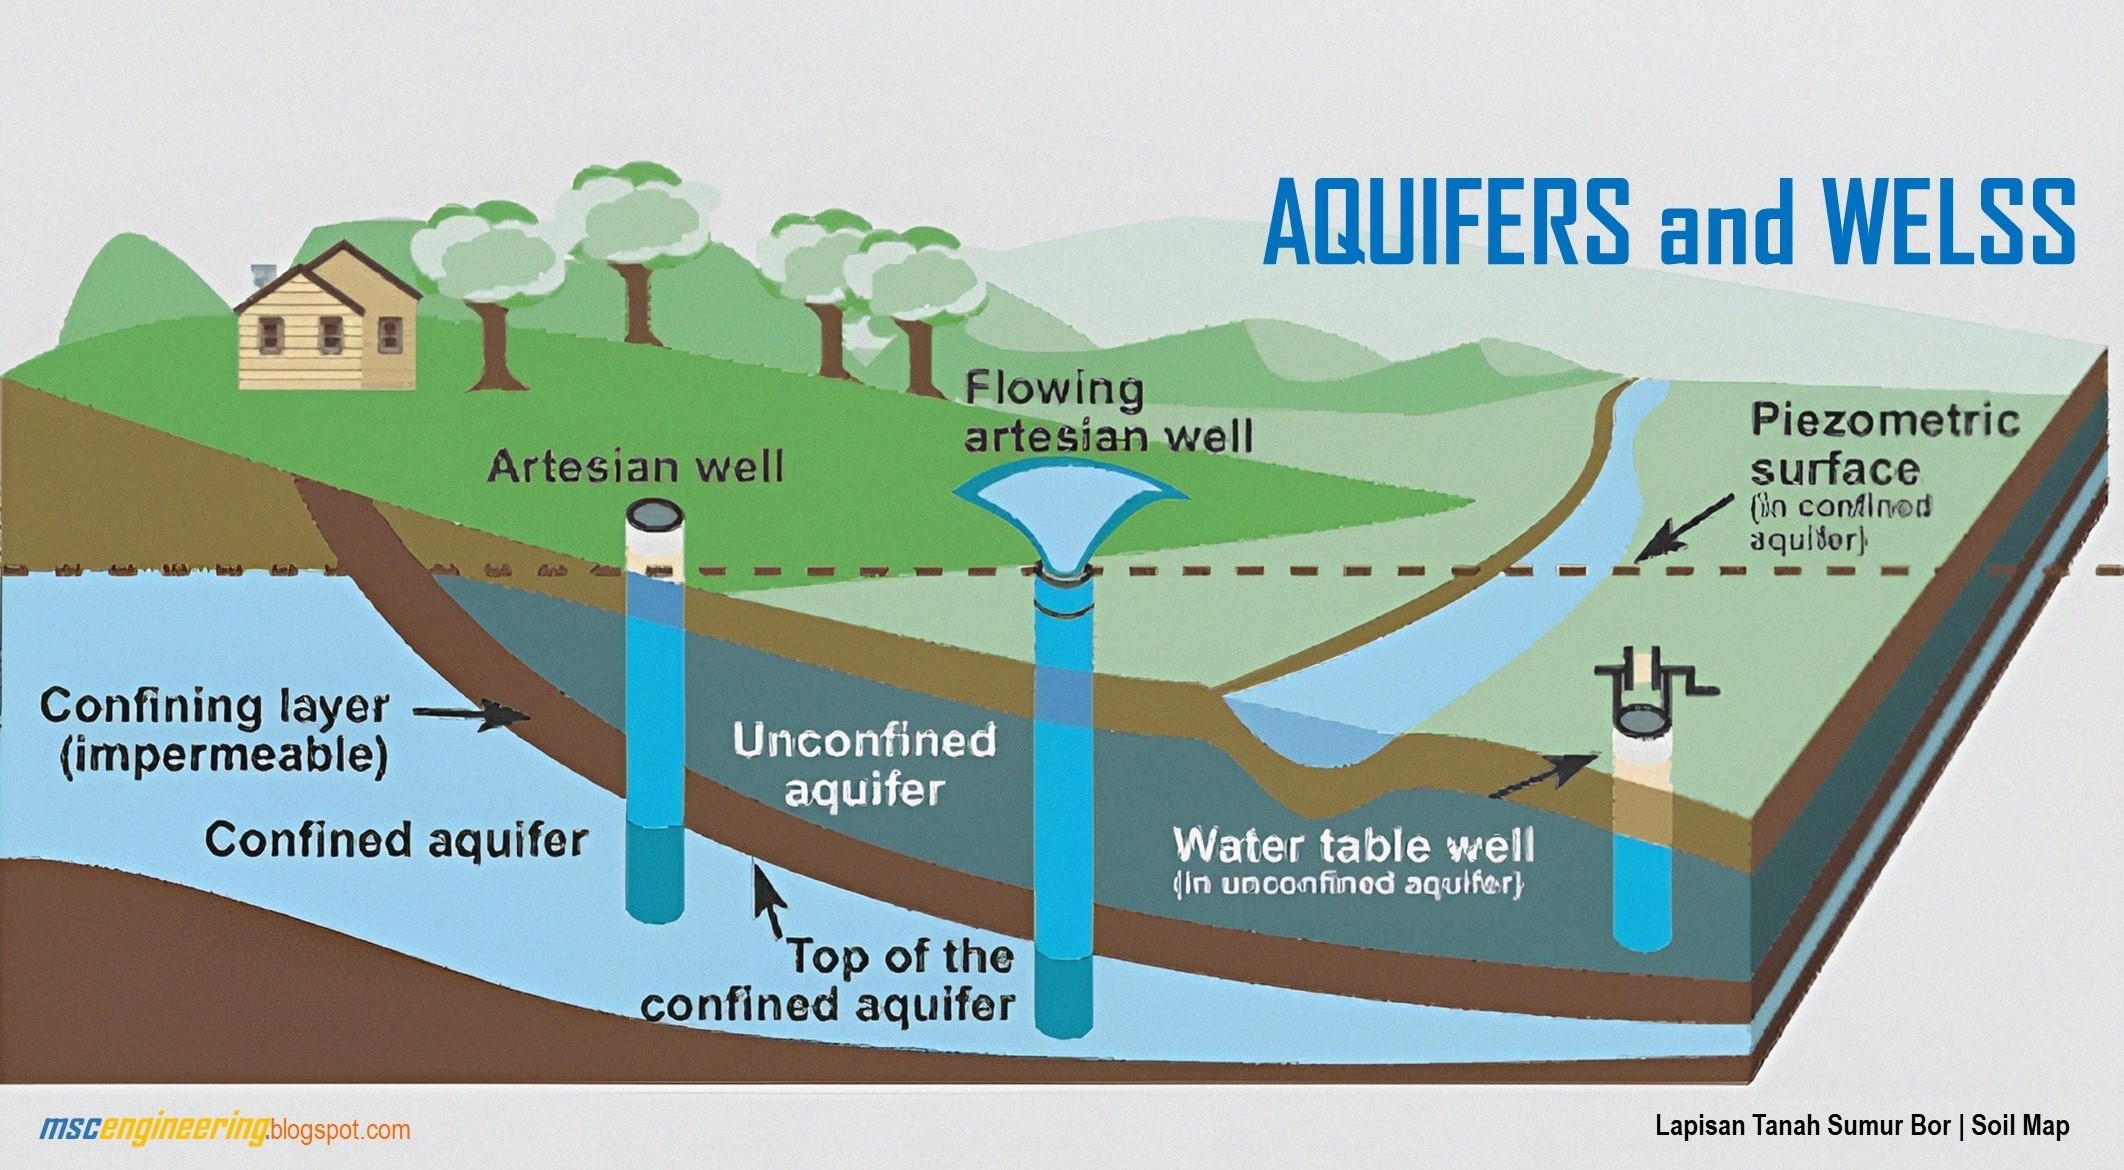 <a href="https://www.mscengineeringgre.com/"><img src="Aquifer adalah lapisan yang mengandung air tanah yang dapat diambil melalui sumur.jpg" alt="Lapisan Tanah Sumur Bor"></a>